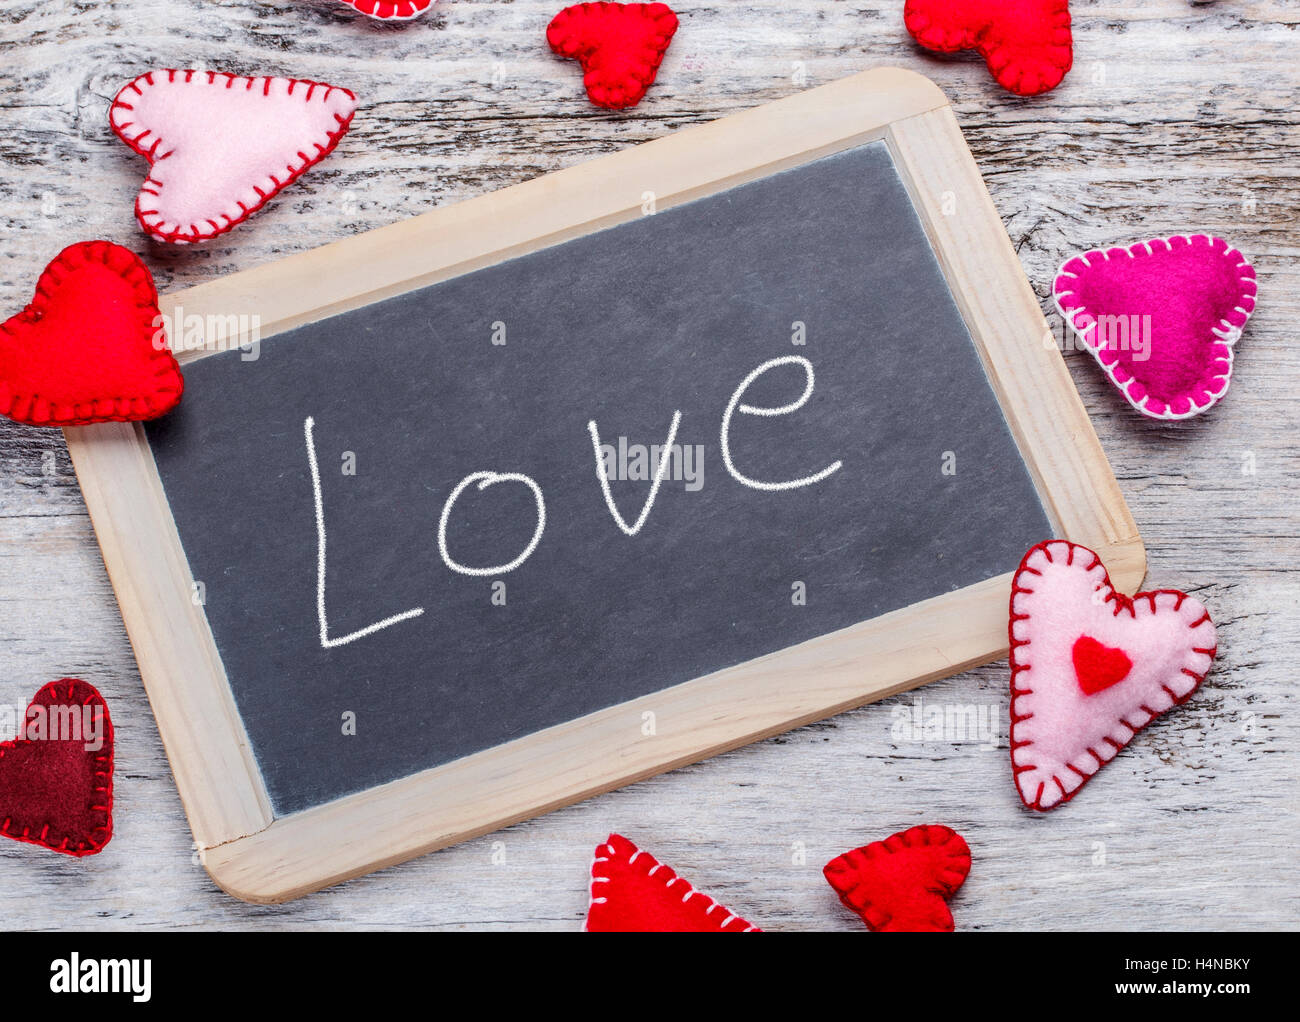 Love. Handwritten message on a chalkboard Stock Photo